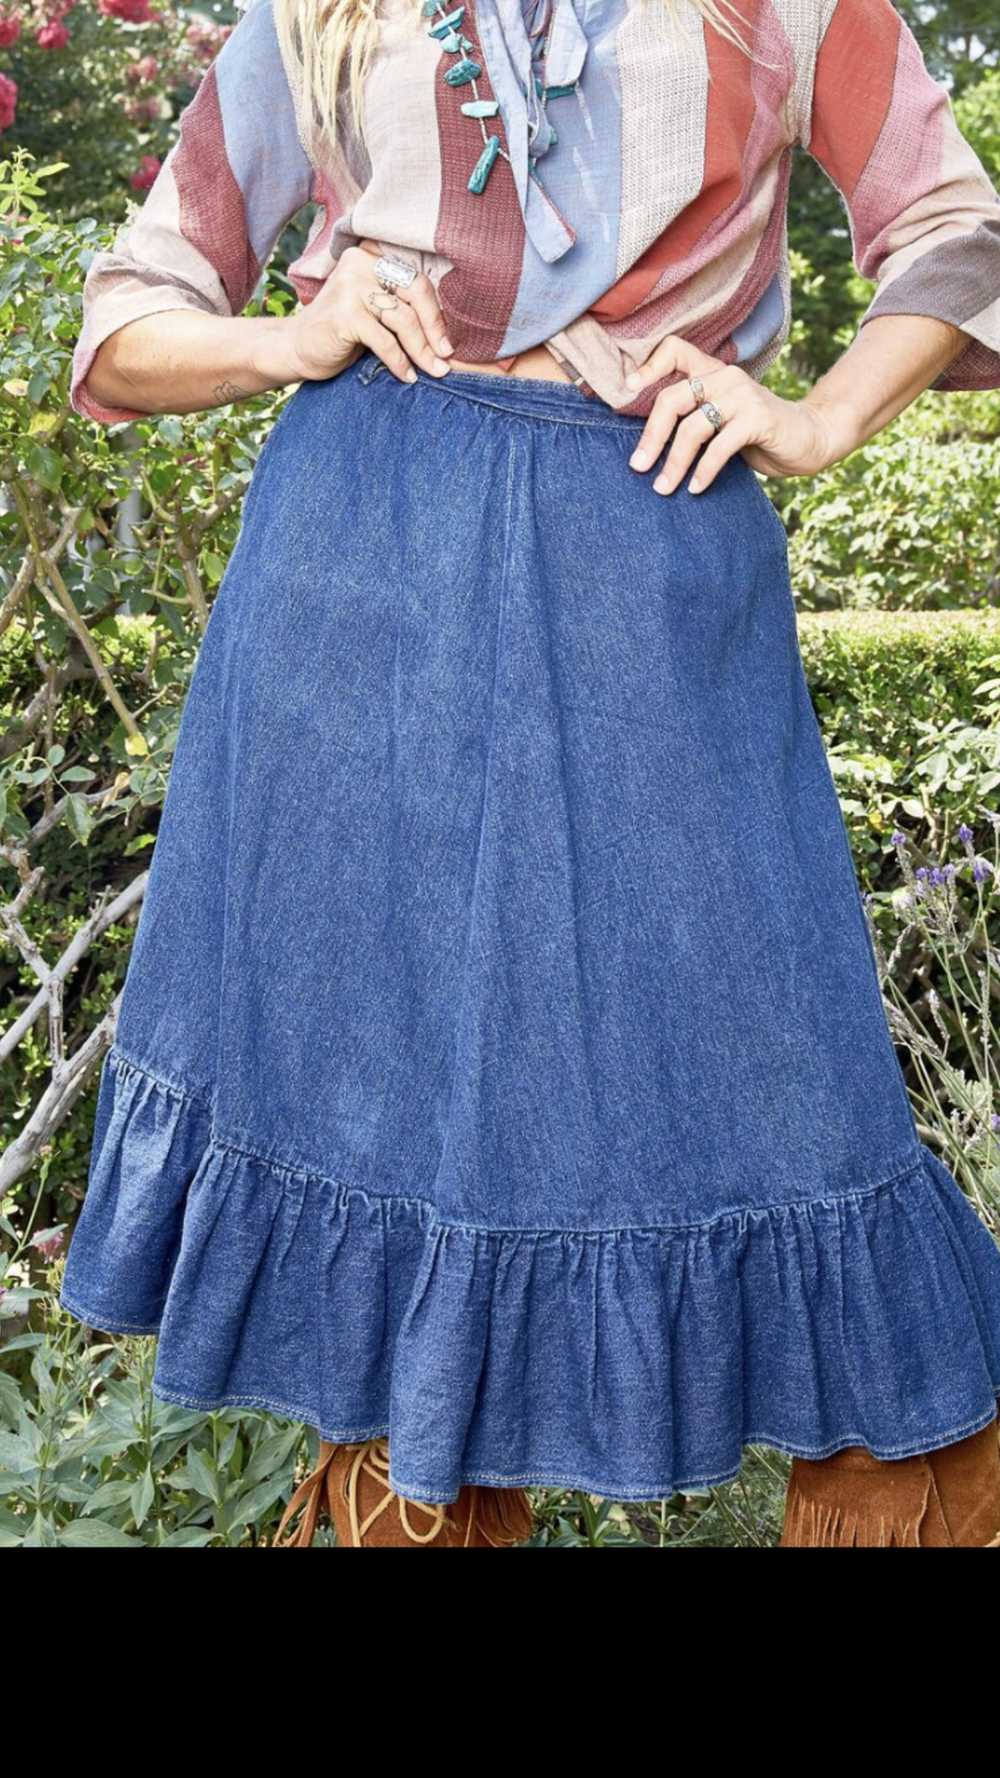 Vintage N'est-ce Pas? Denim Skirt with Ruffle - image 2